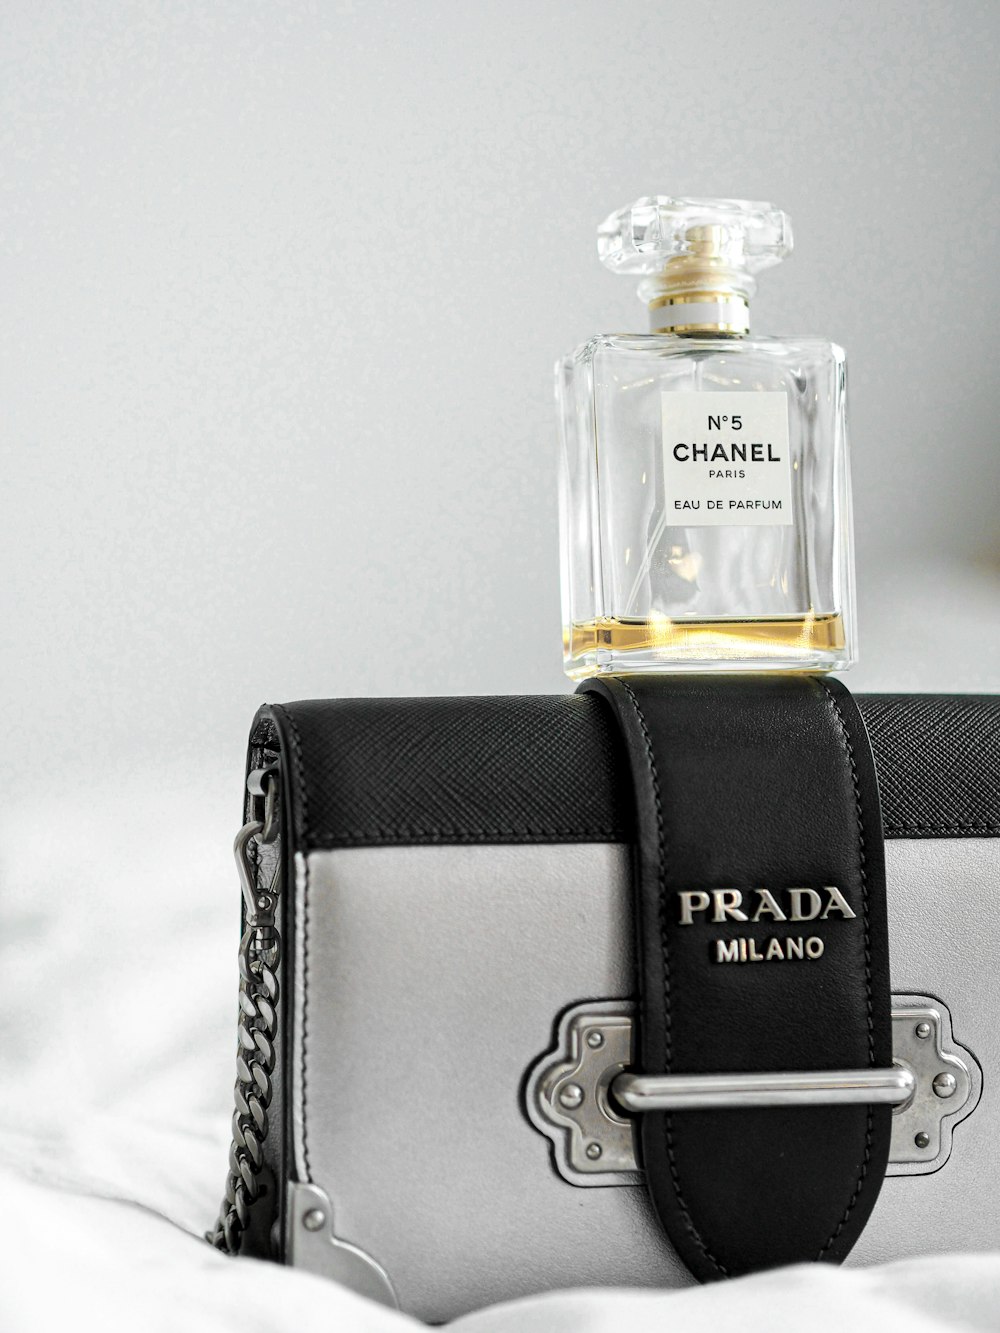 black and gold perfume bottle photo – Free Paris Image on Unsplash